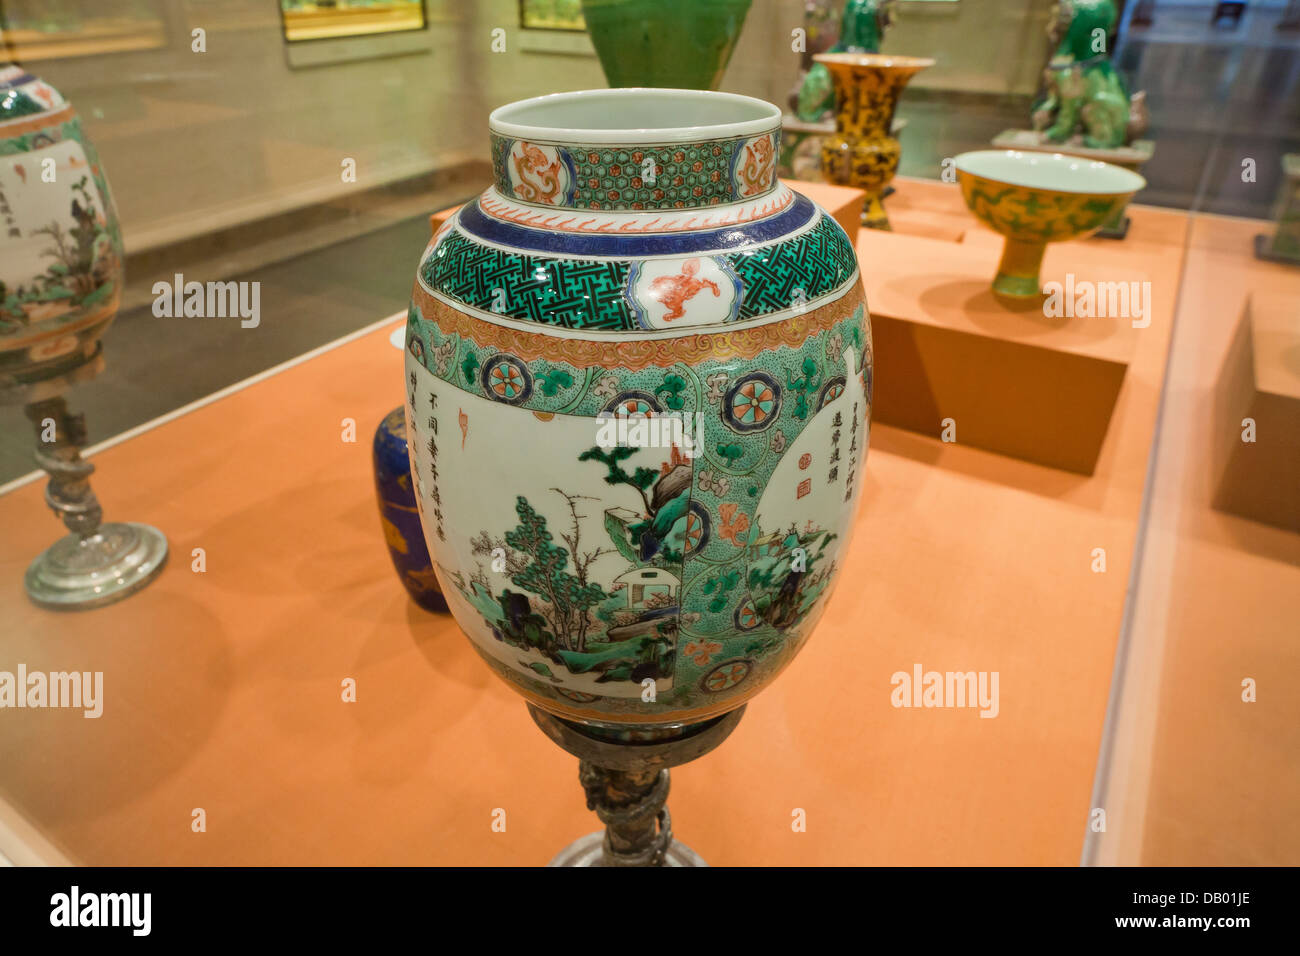 Lanterne avec overglaze famille verte émaux sur porcelaine - Chine règne de Kangxi, 1662 Banque D'Images